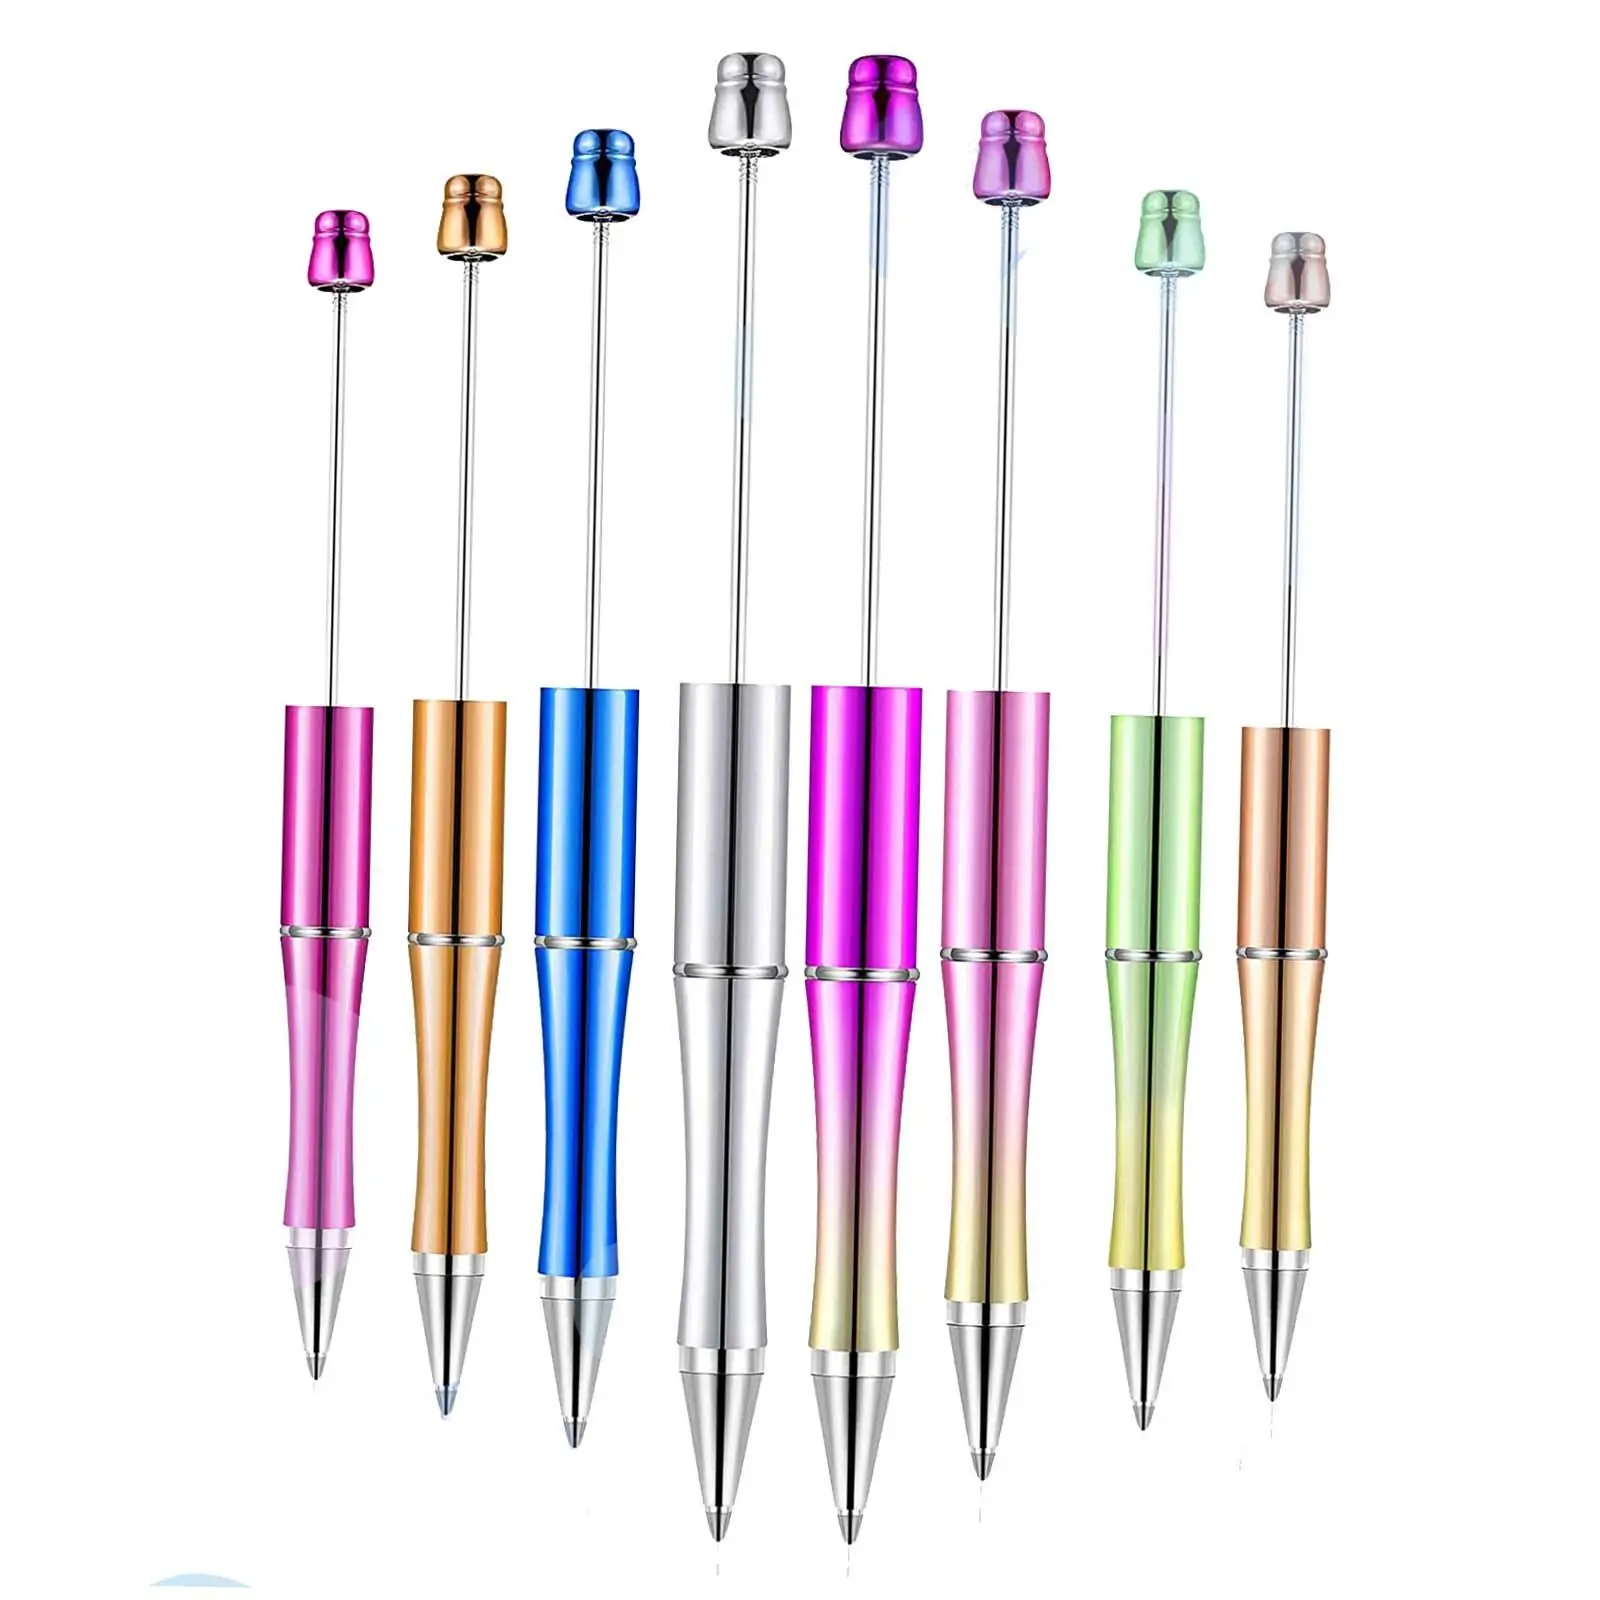 

8x ручки с бисером, креативная портативная шариковая ручка с принтом, разноцветные ручки с бисером для школы, офиса, экзамена, записей и письма